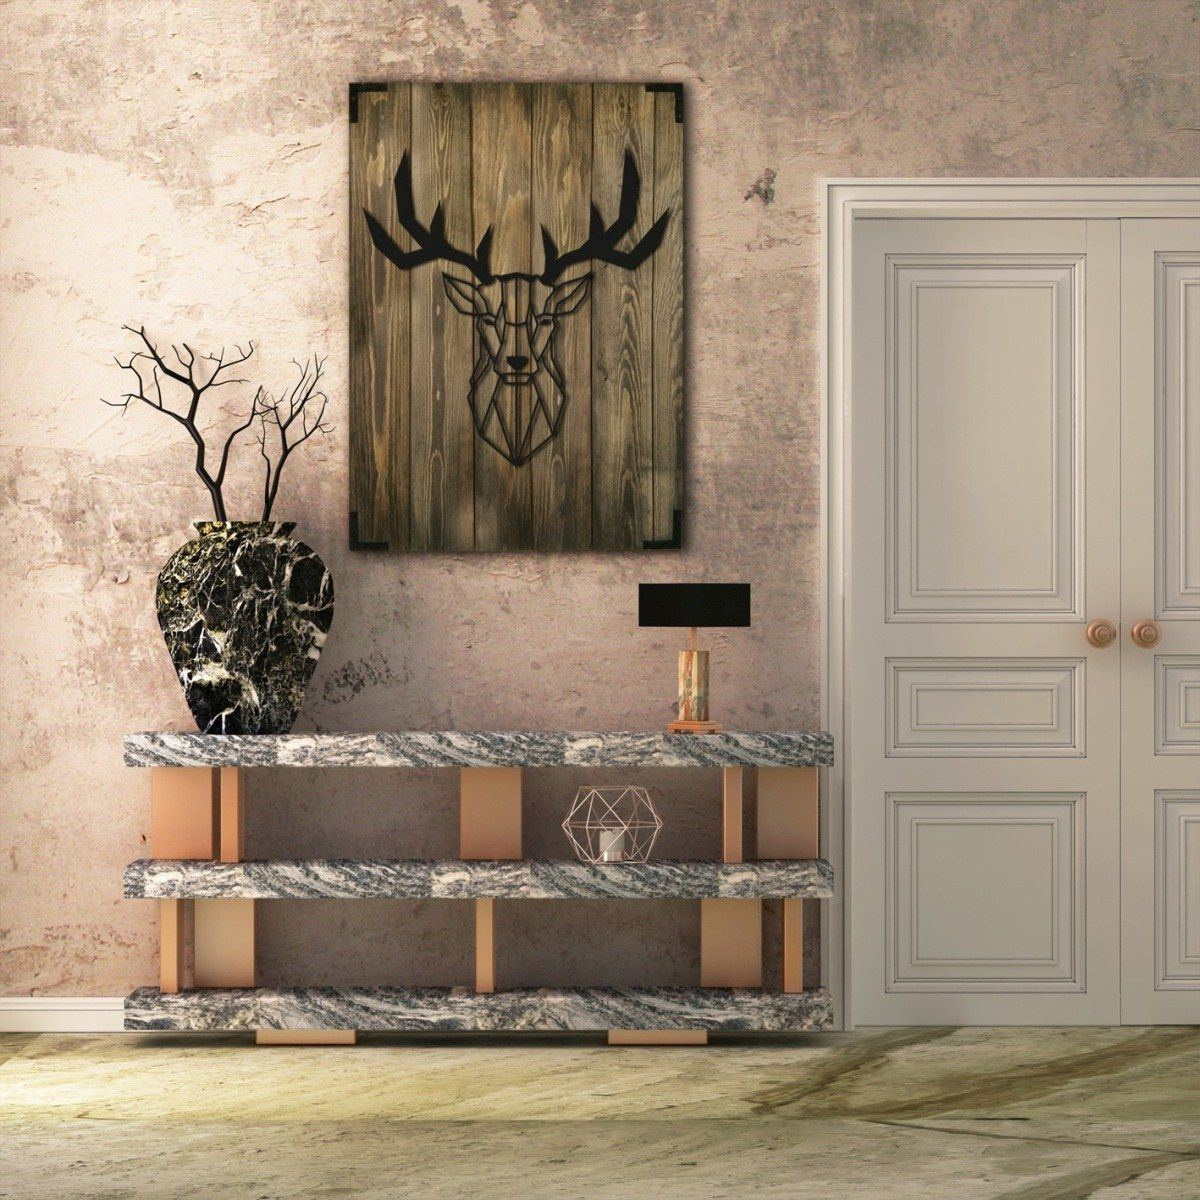 Bild – Wandbild die Holz Holz für modernes Wand 3 Hirsch